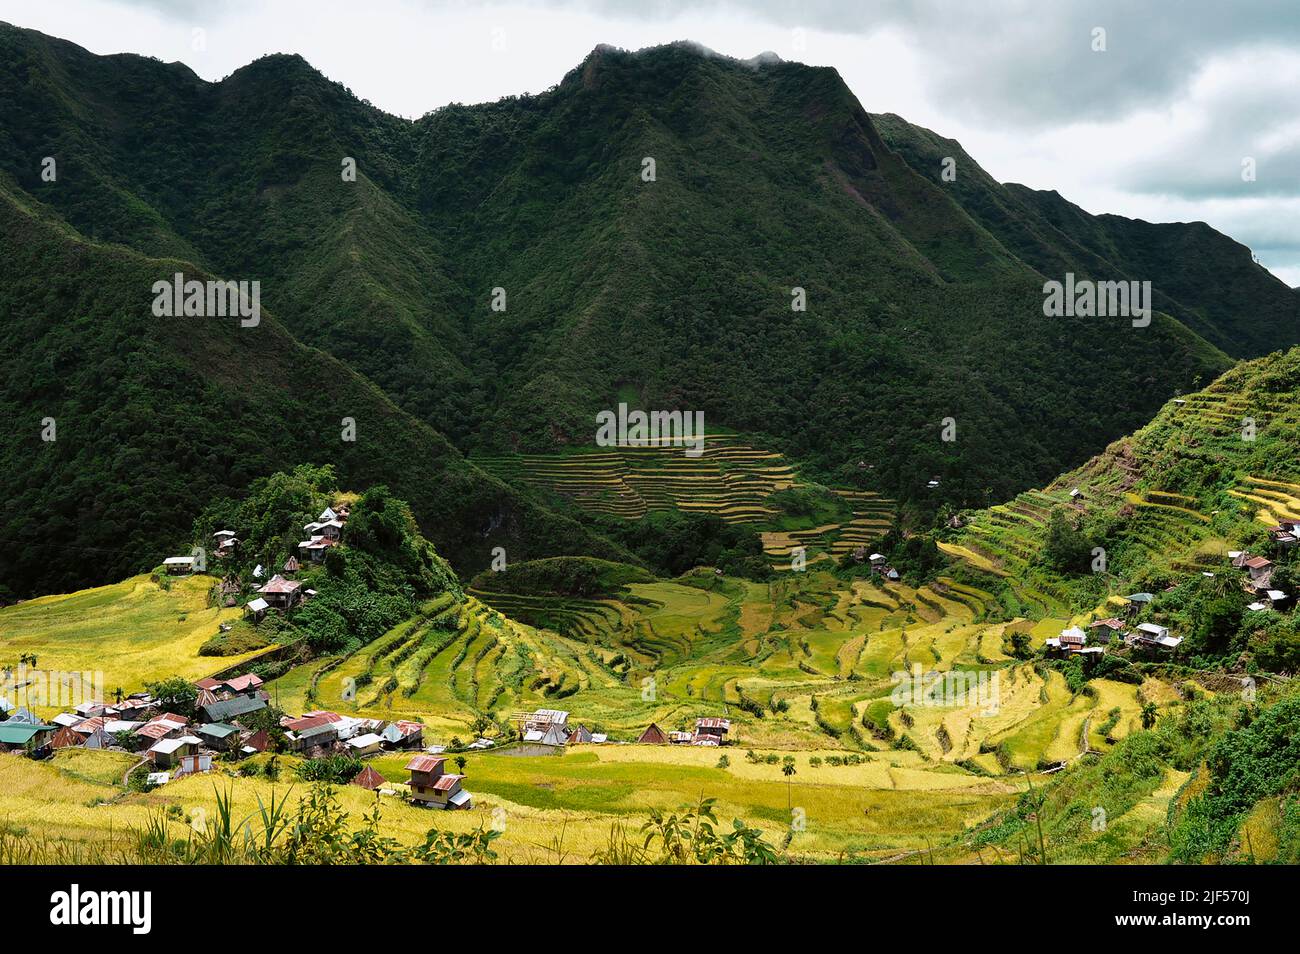 Mountain Province, Philippinen: Majestätische landwirtschaftliche Landschaft des alten Amphitheaters Banaue Rise Terrassen. Genannt Achteles Weltwunder. Stockfoto